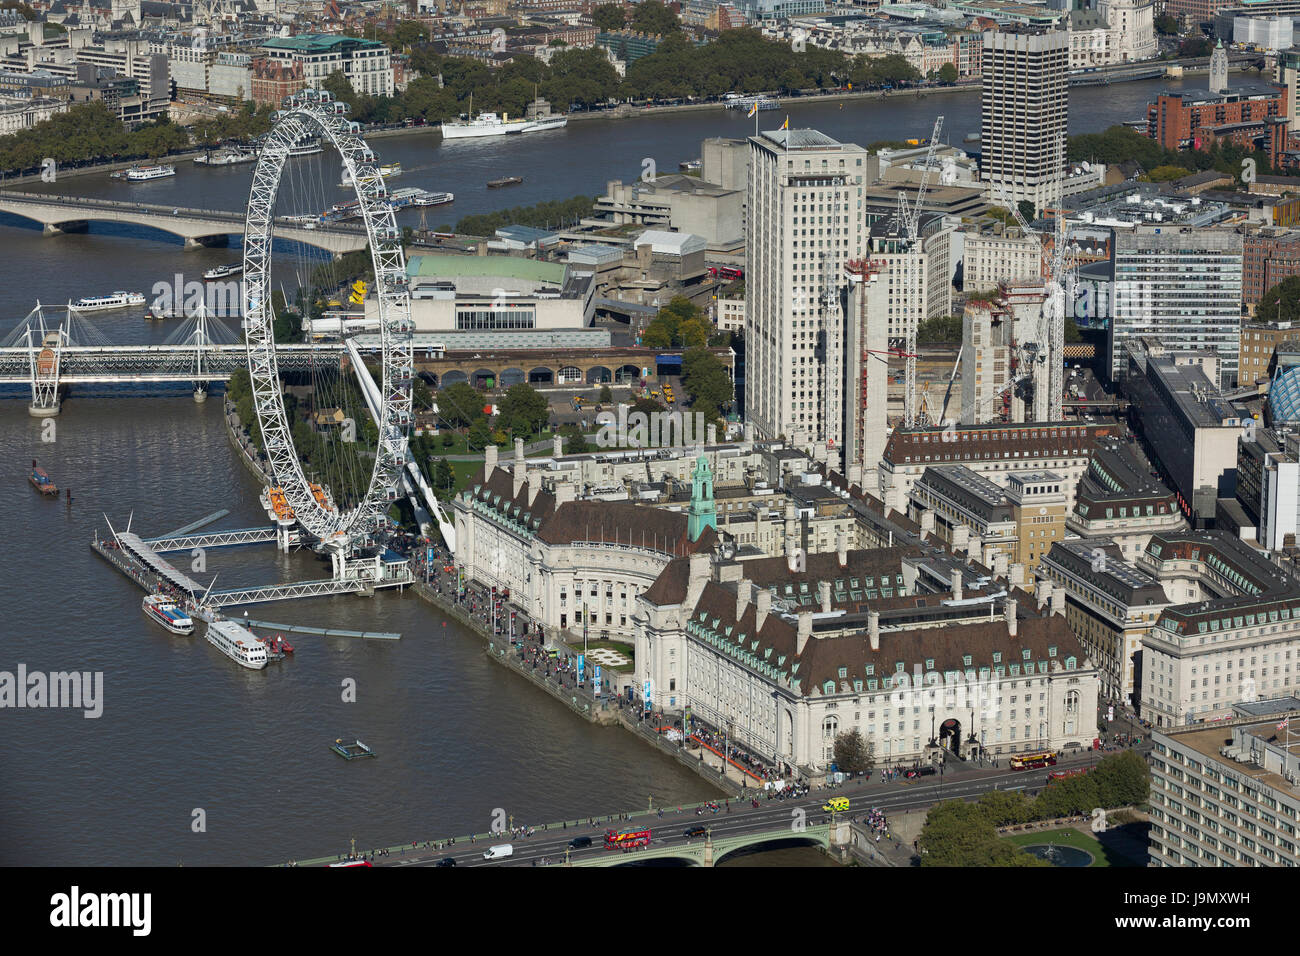 El London Eye se encuentra en la orilla sur del río Támesis. El Jubilee Gardens y el County Hall del edificio. En Lambeth, Londres Foto de stock